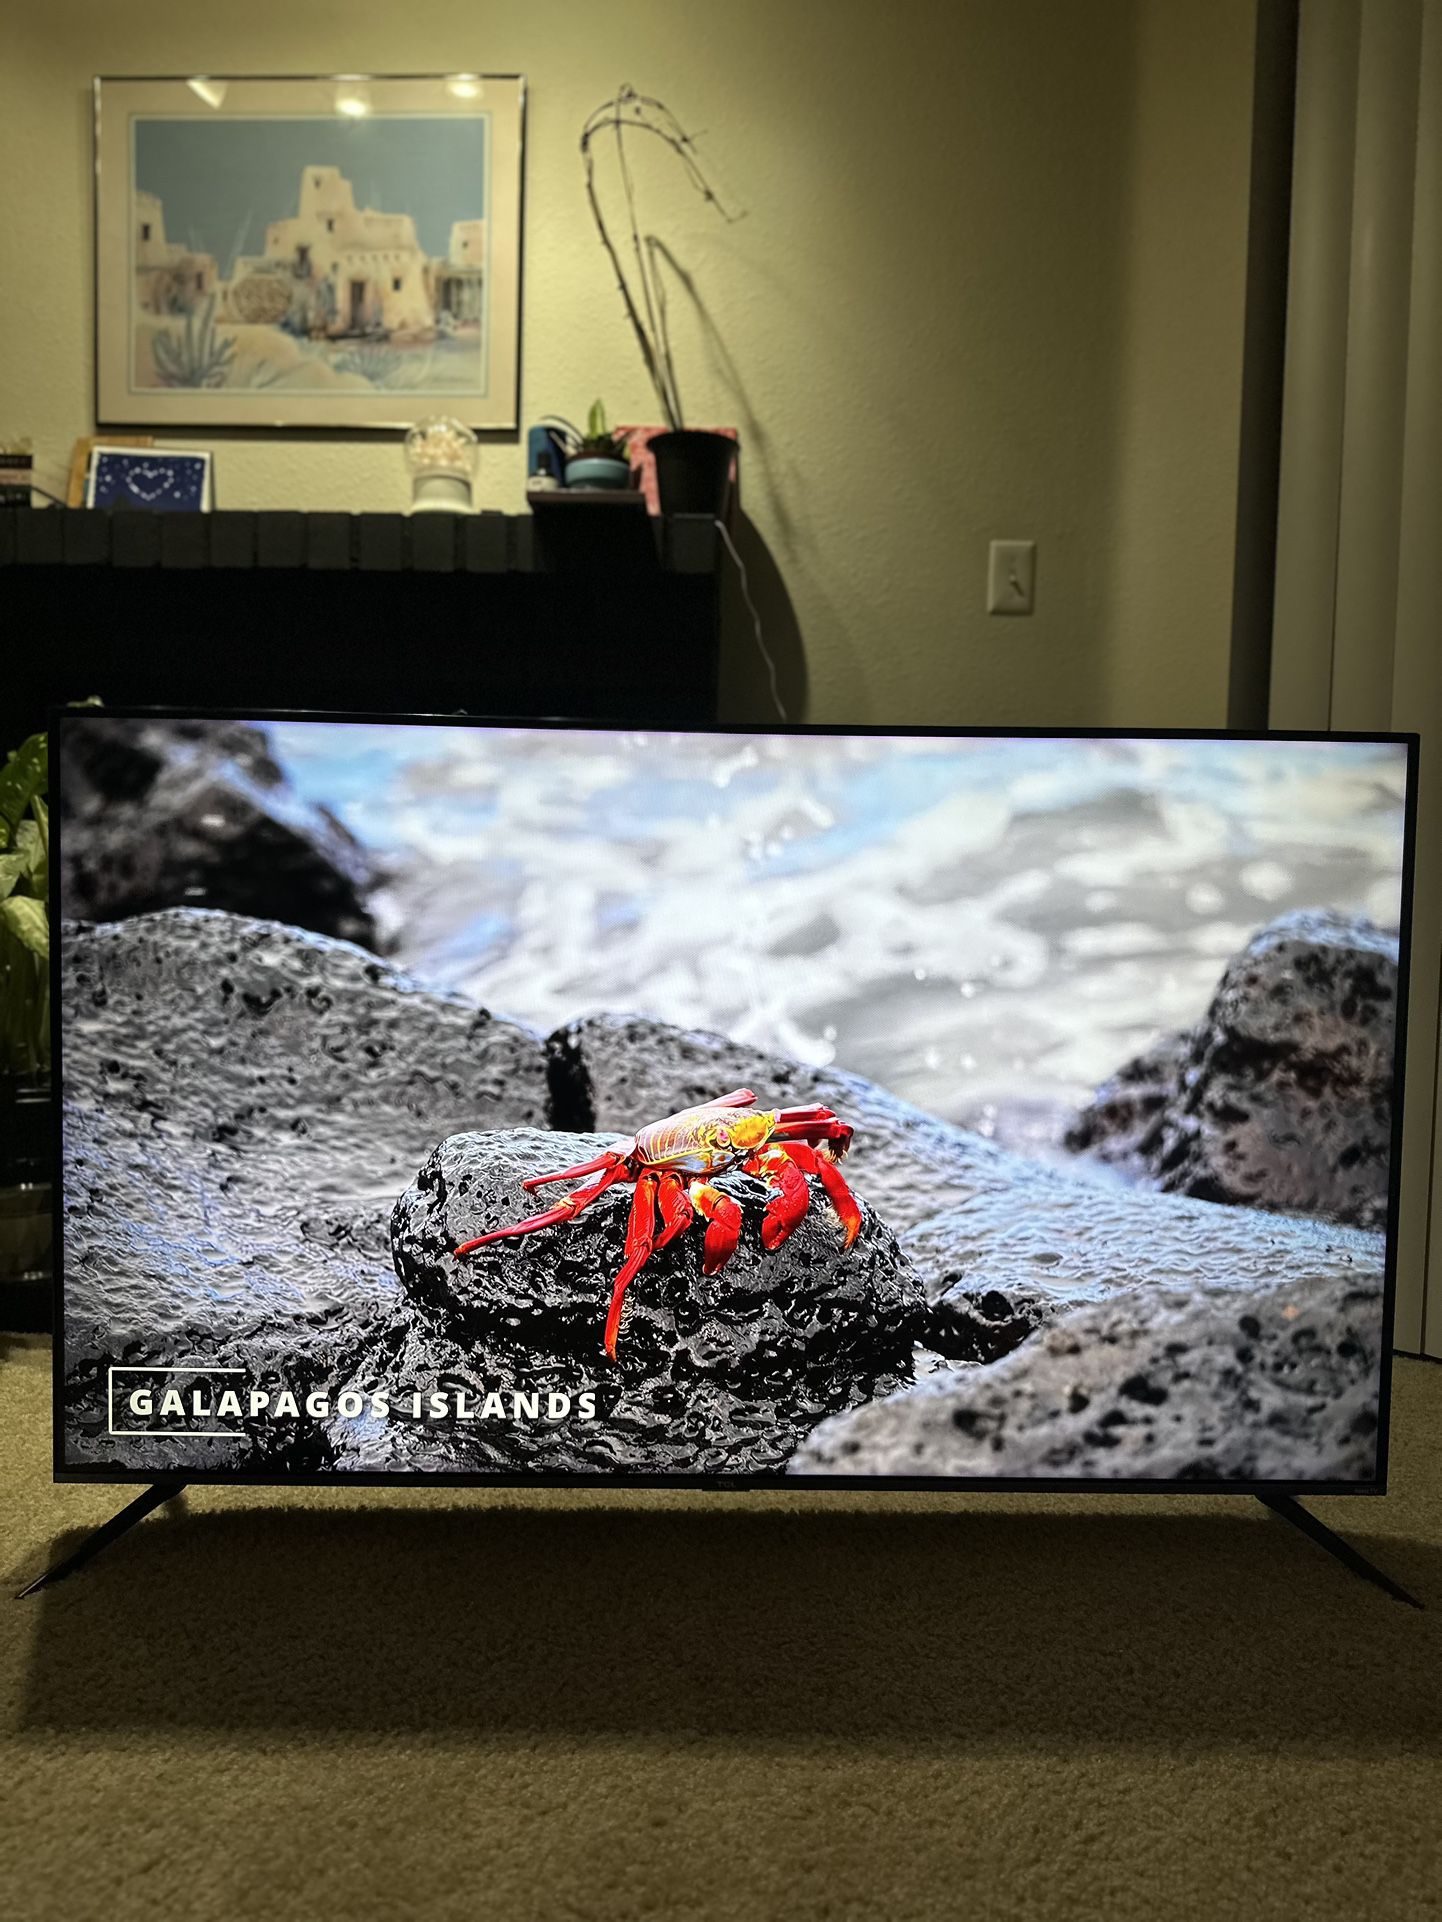 55” TCL 4K QLED Smart TV